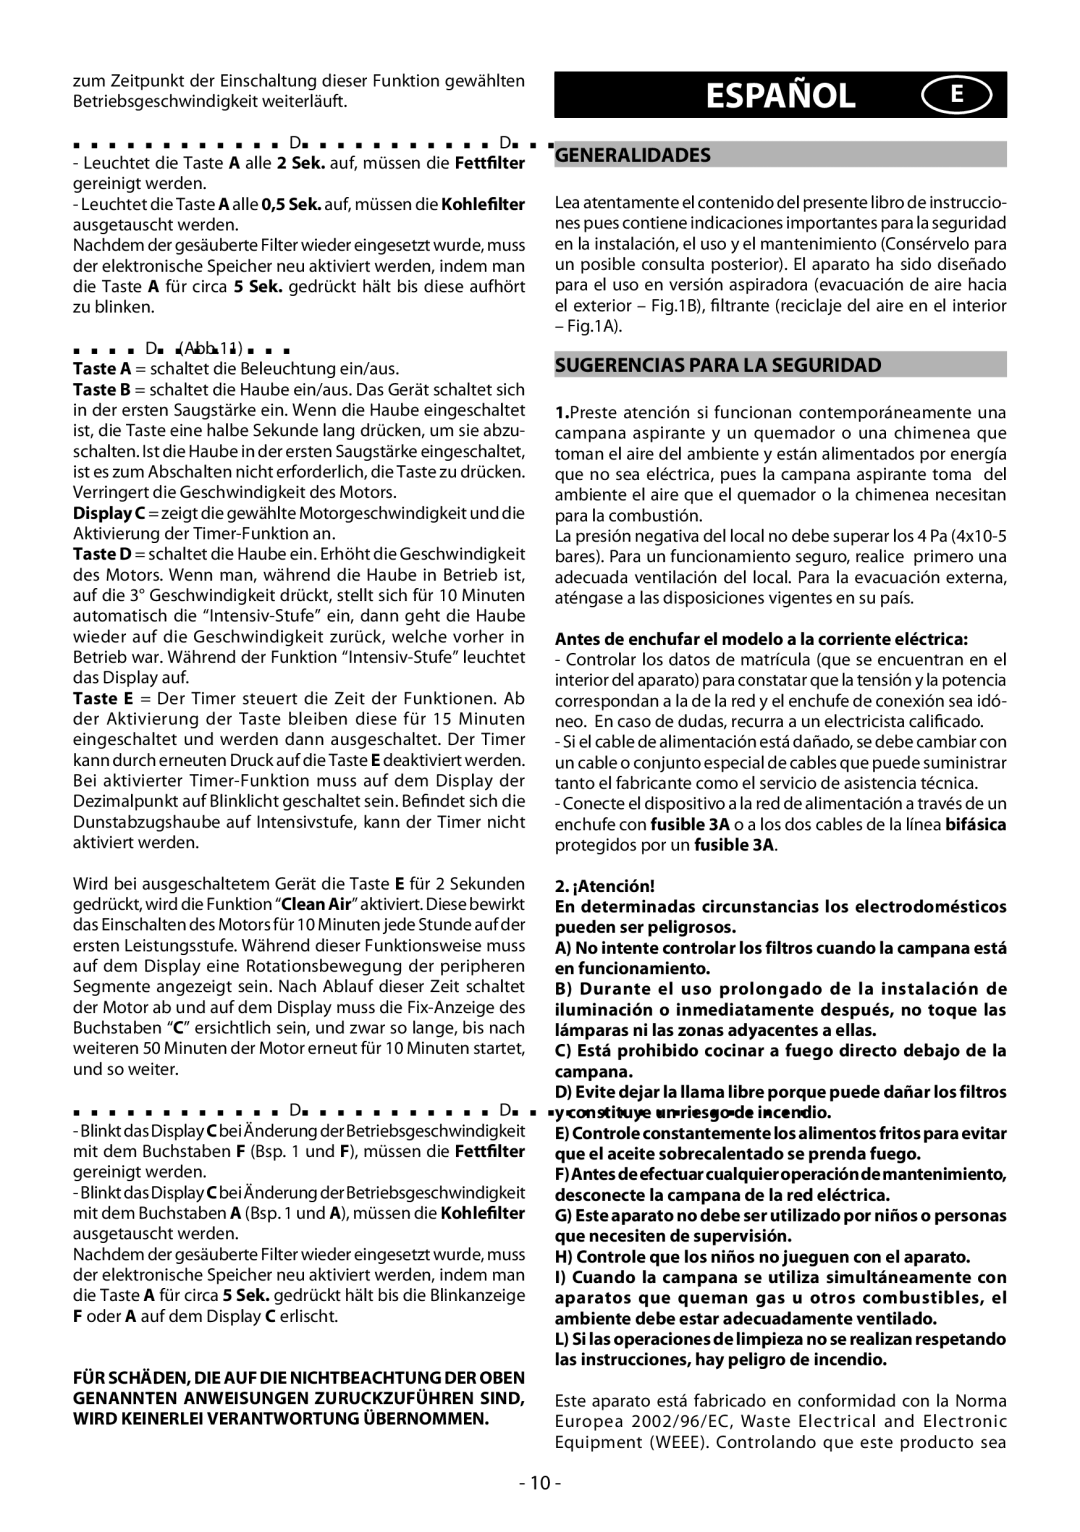 Beko HBG70X manual Español E, Generalidades, Sugerencias Para LA Seguridad 